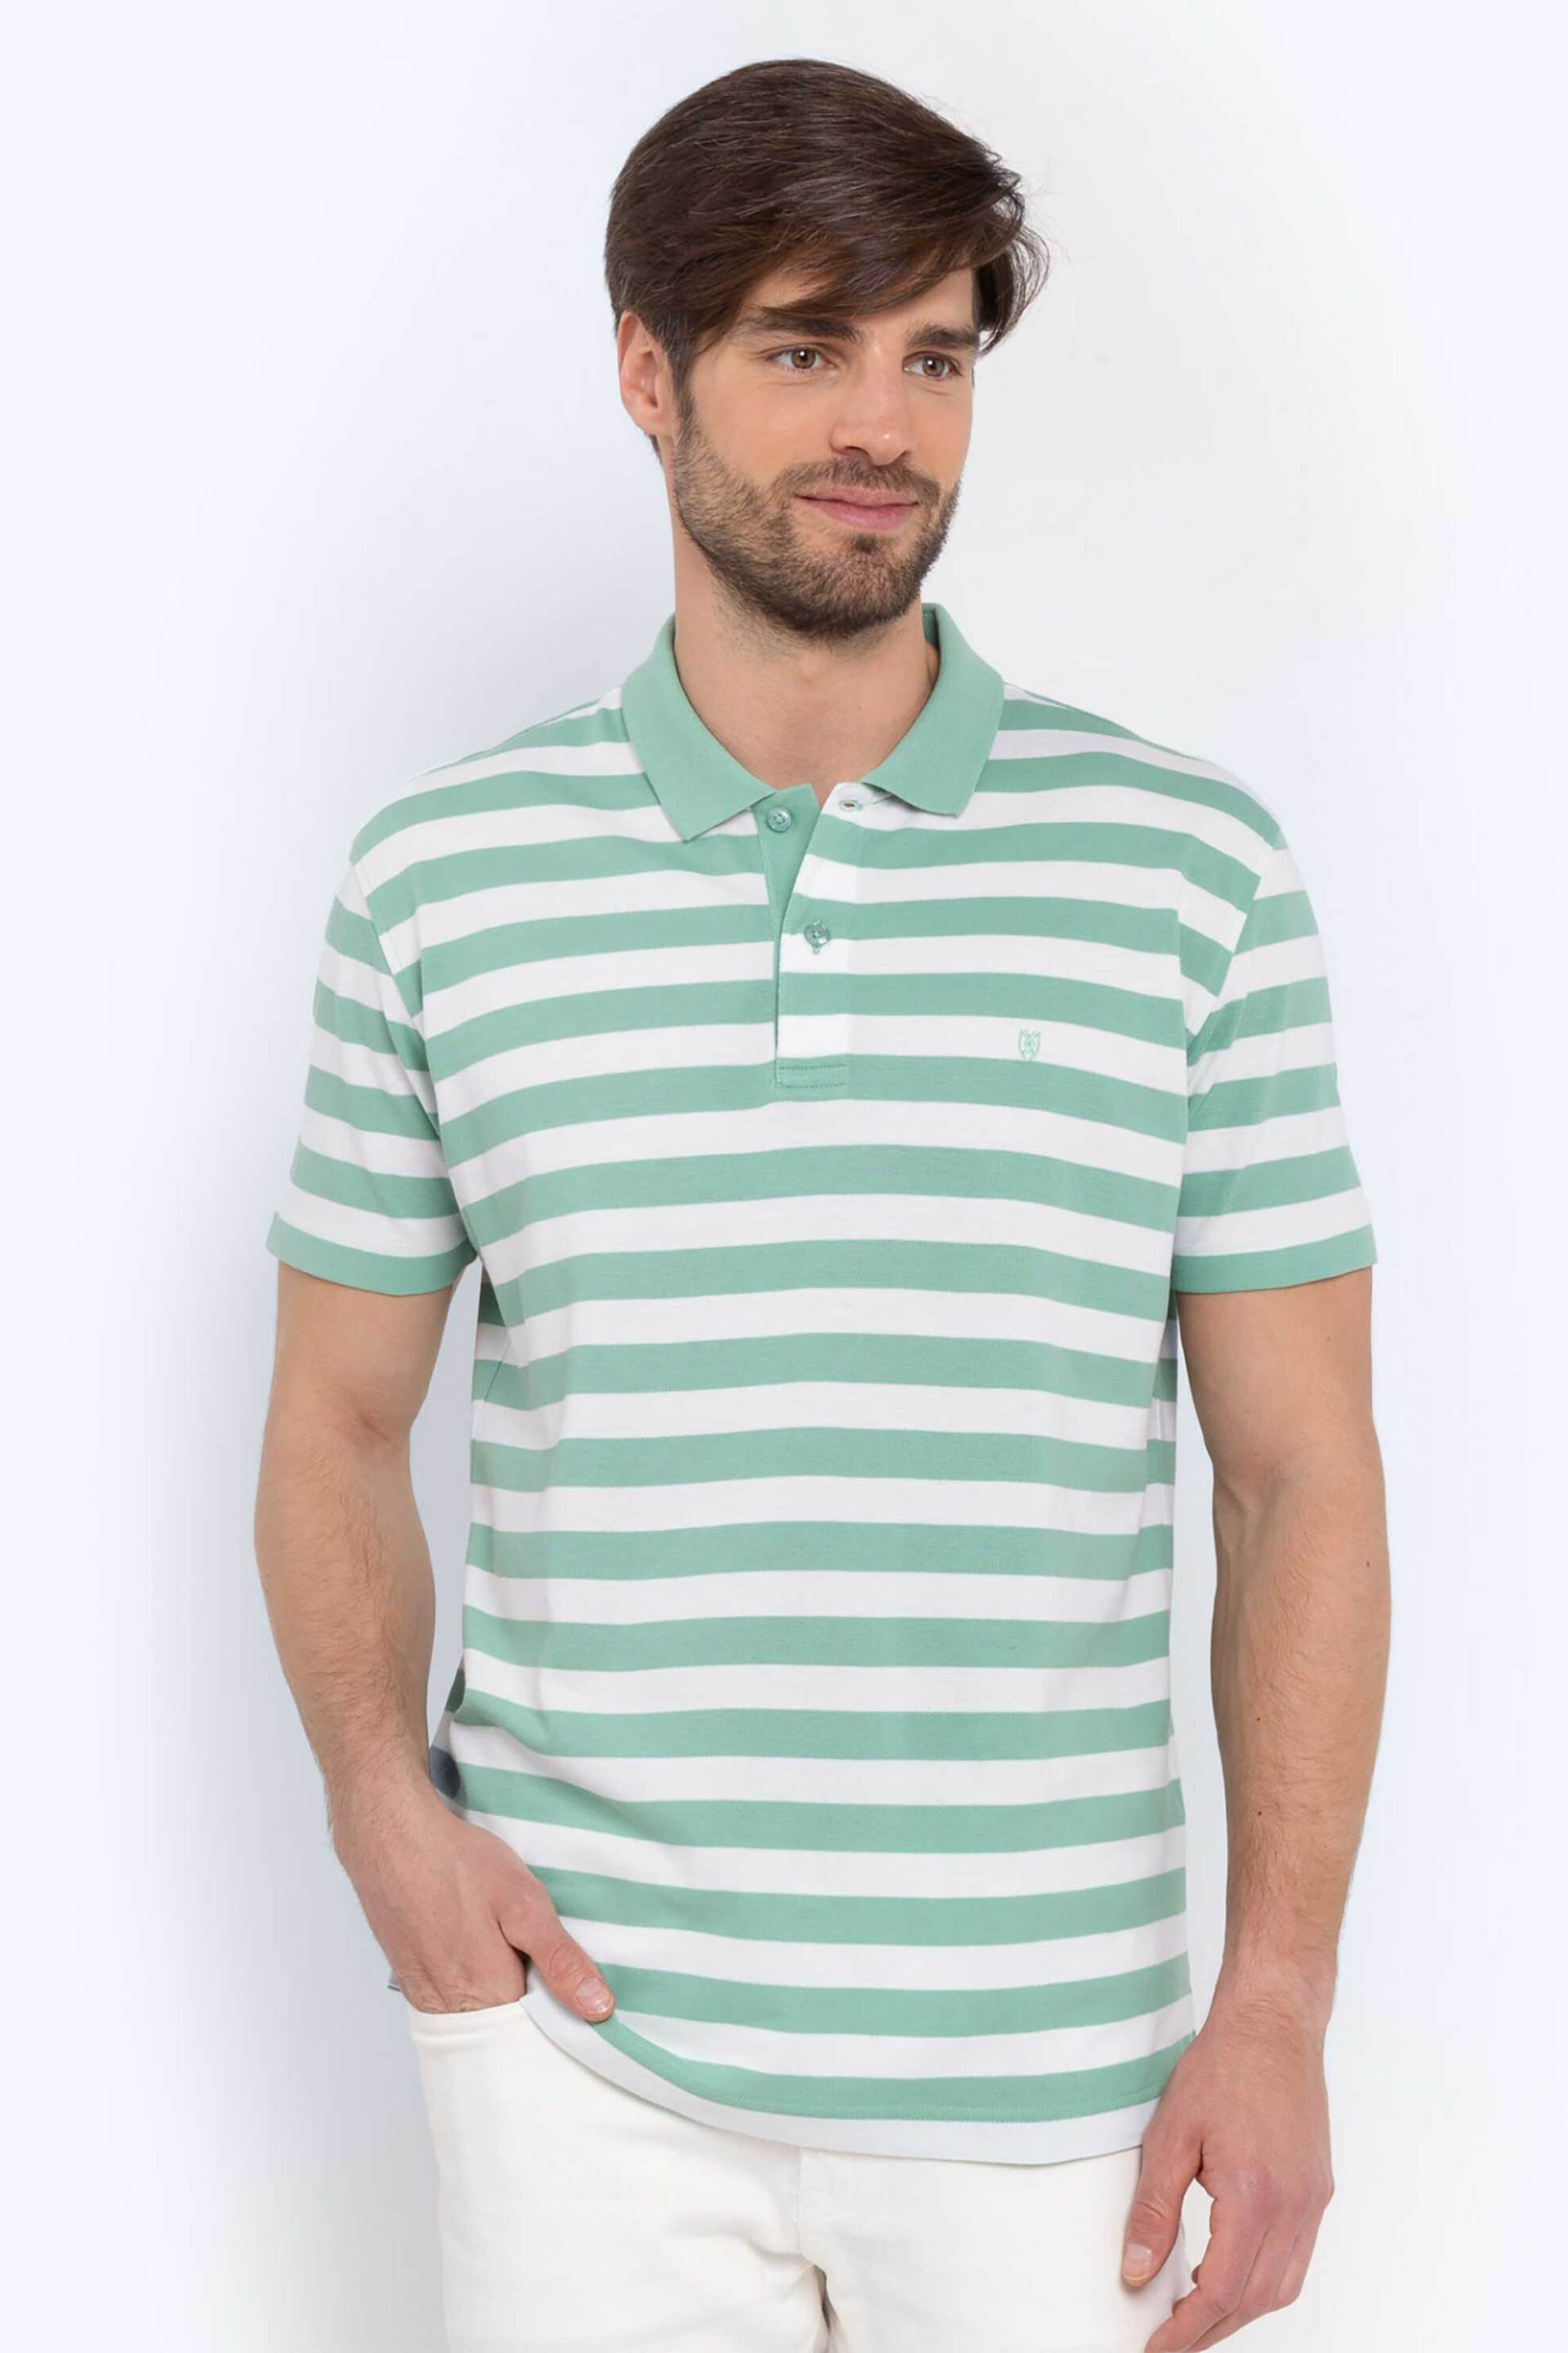 Ανδρική Μόδα > Ανδρικά Ρούχα > Ανδρικές Μπλούζες > Ανδρικές Μπλούζες Πολο The Bostonians ανδρική πόλο μπλούζα πικέ με ριγέ σχέδιο και λογότυπο Regular Fit "Acorn" - PS4454 Πράσινο Ανοιχτό